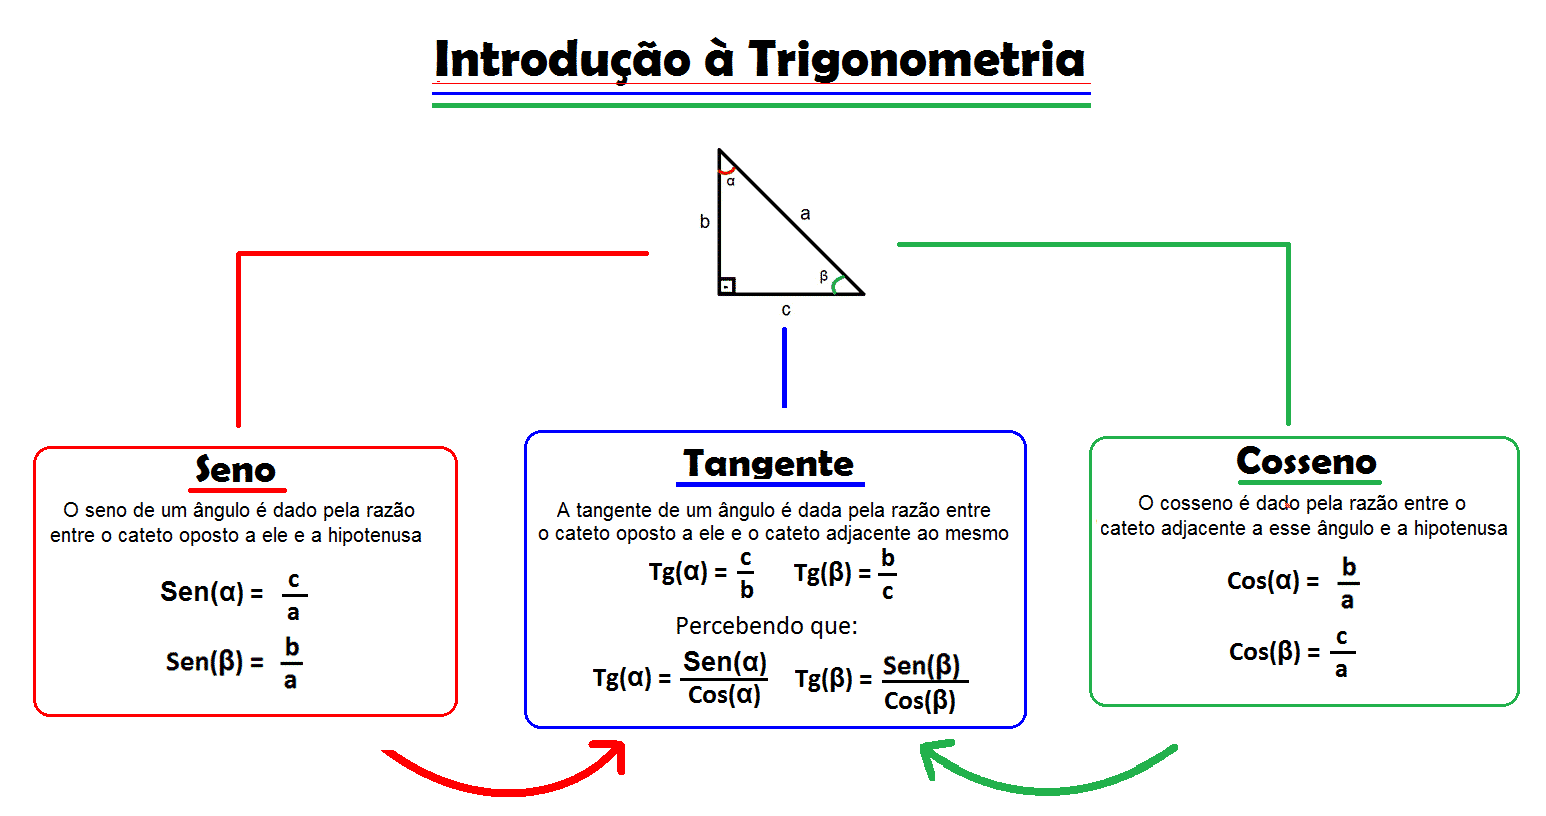 Conheça a Trigonometria, sua origem e de que forma ela é aplicada